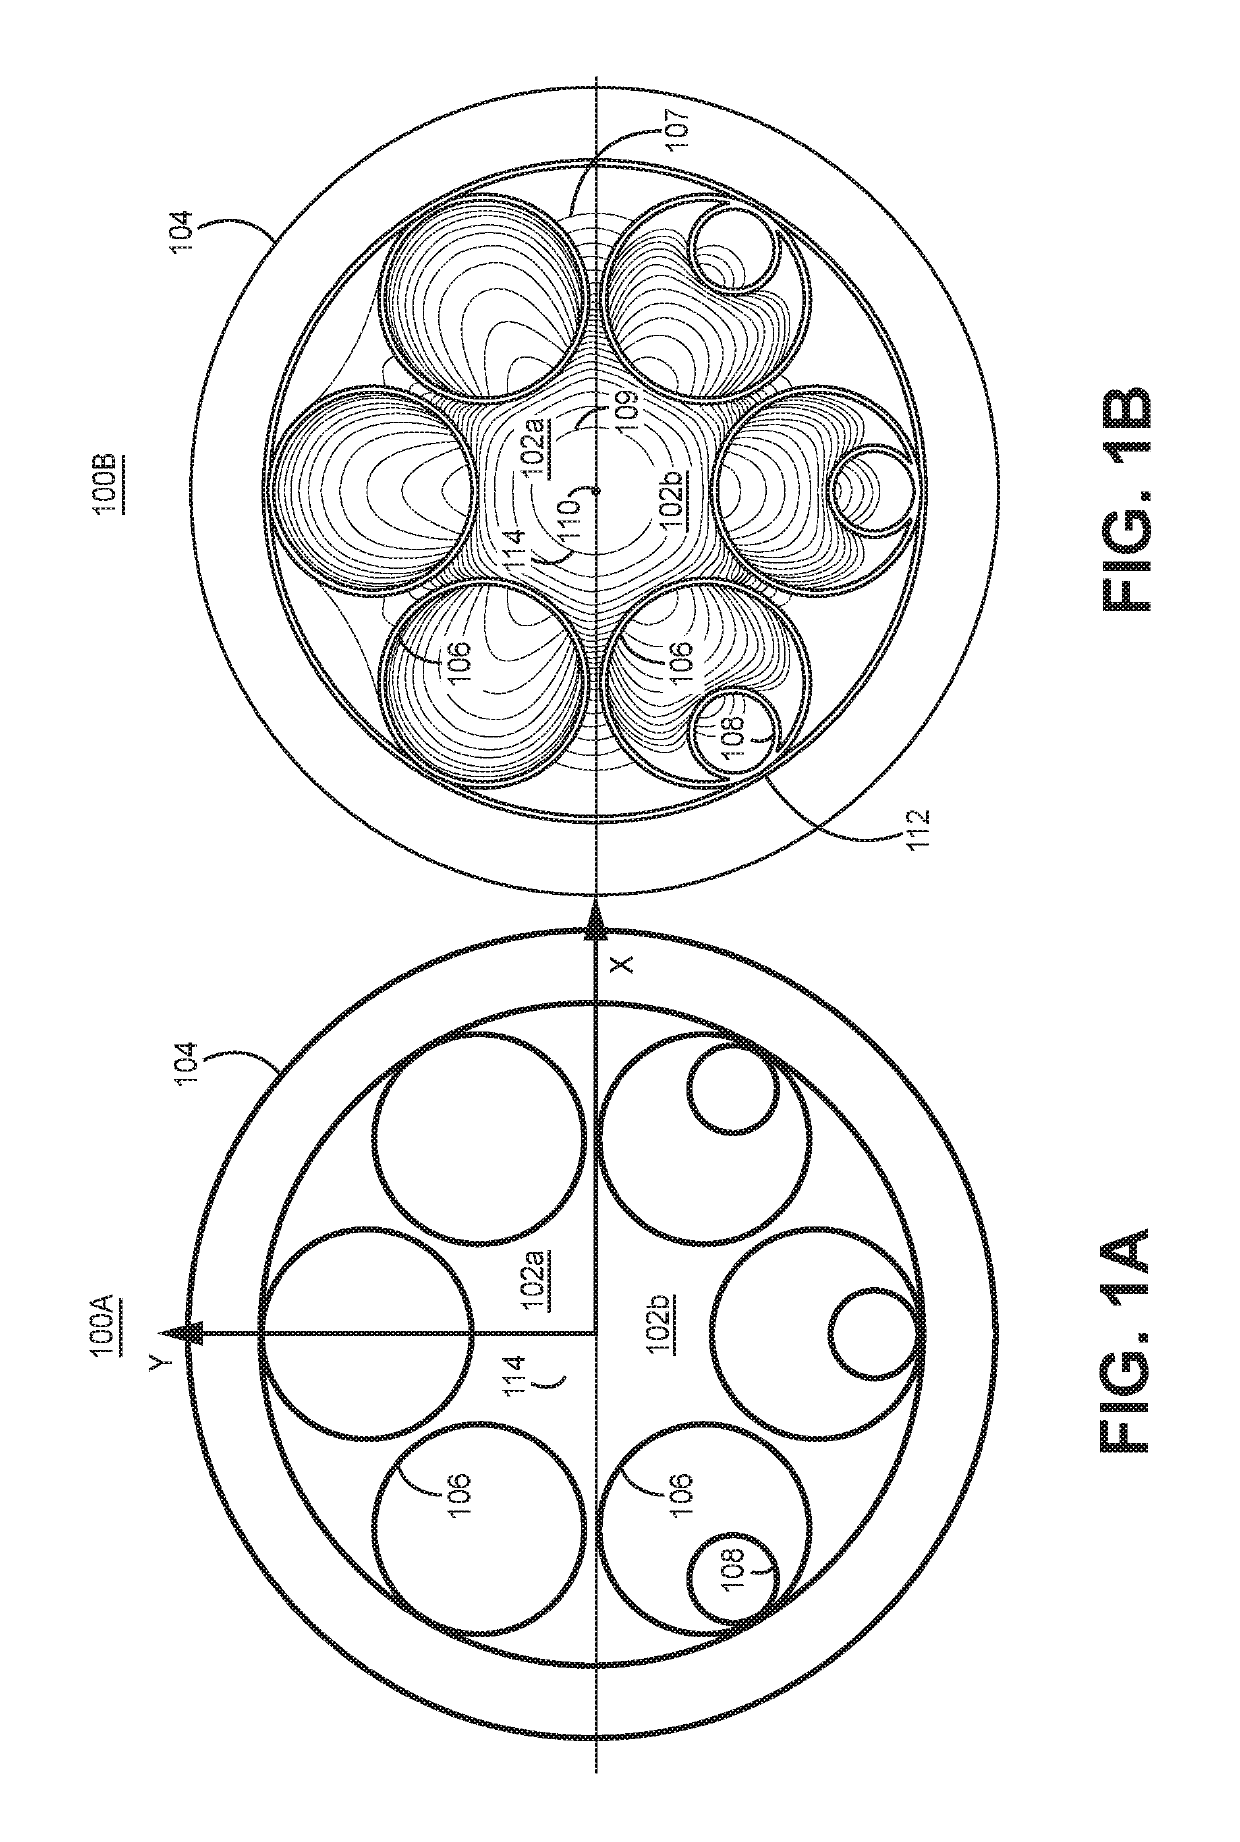 Resonant fiber optical gyroscope using antiresonant nodeless fiber